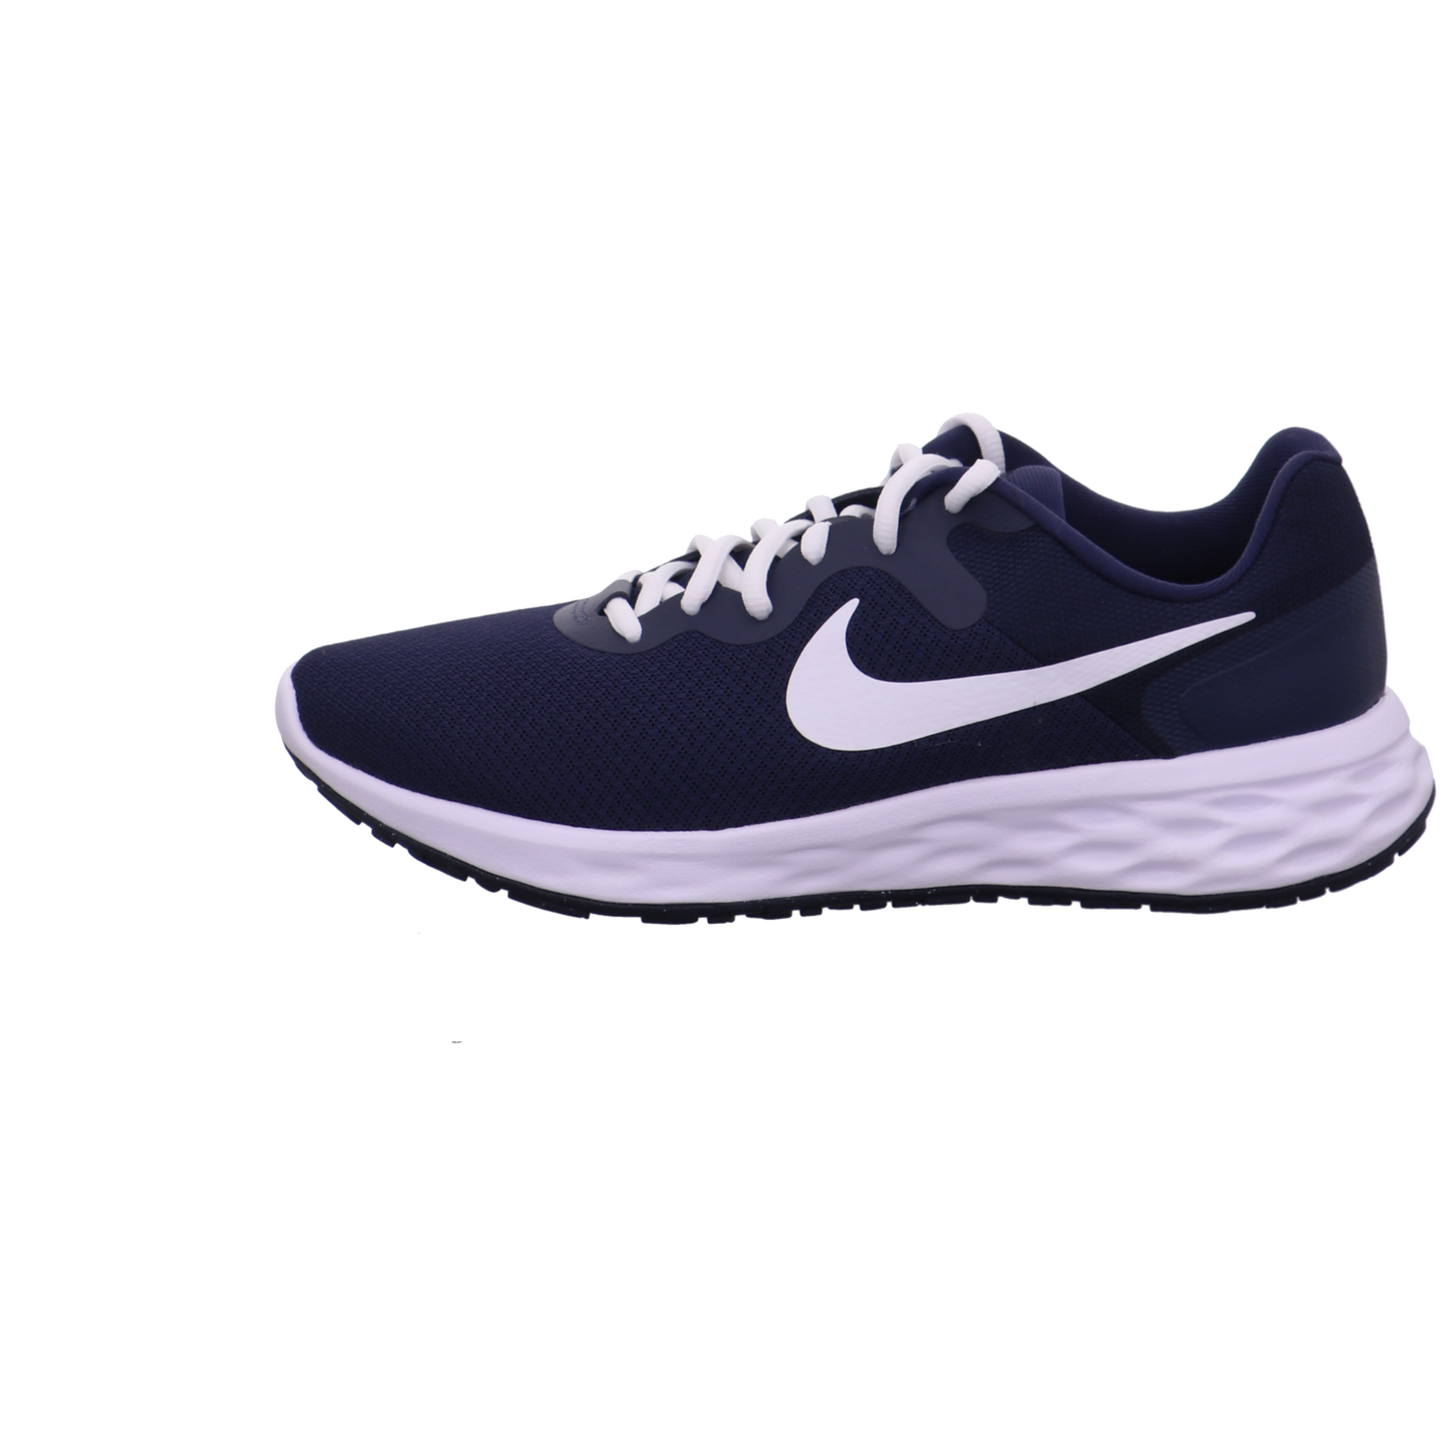 Nike Training und Hallenschuhe blau kombi Bild1